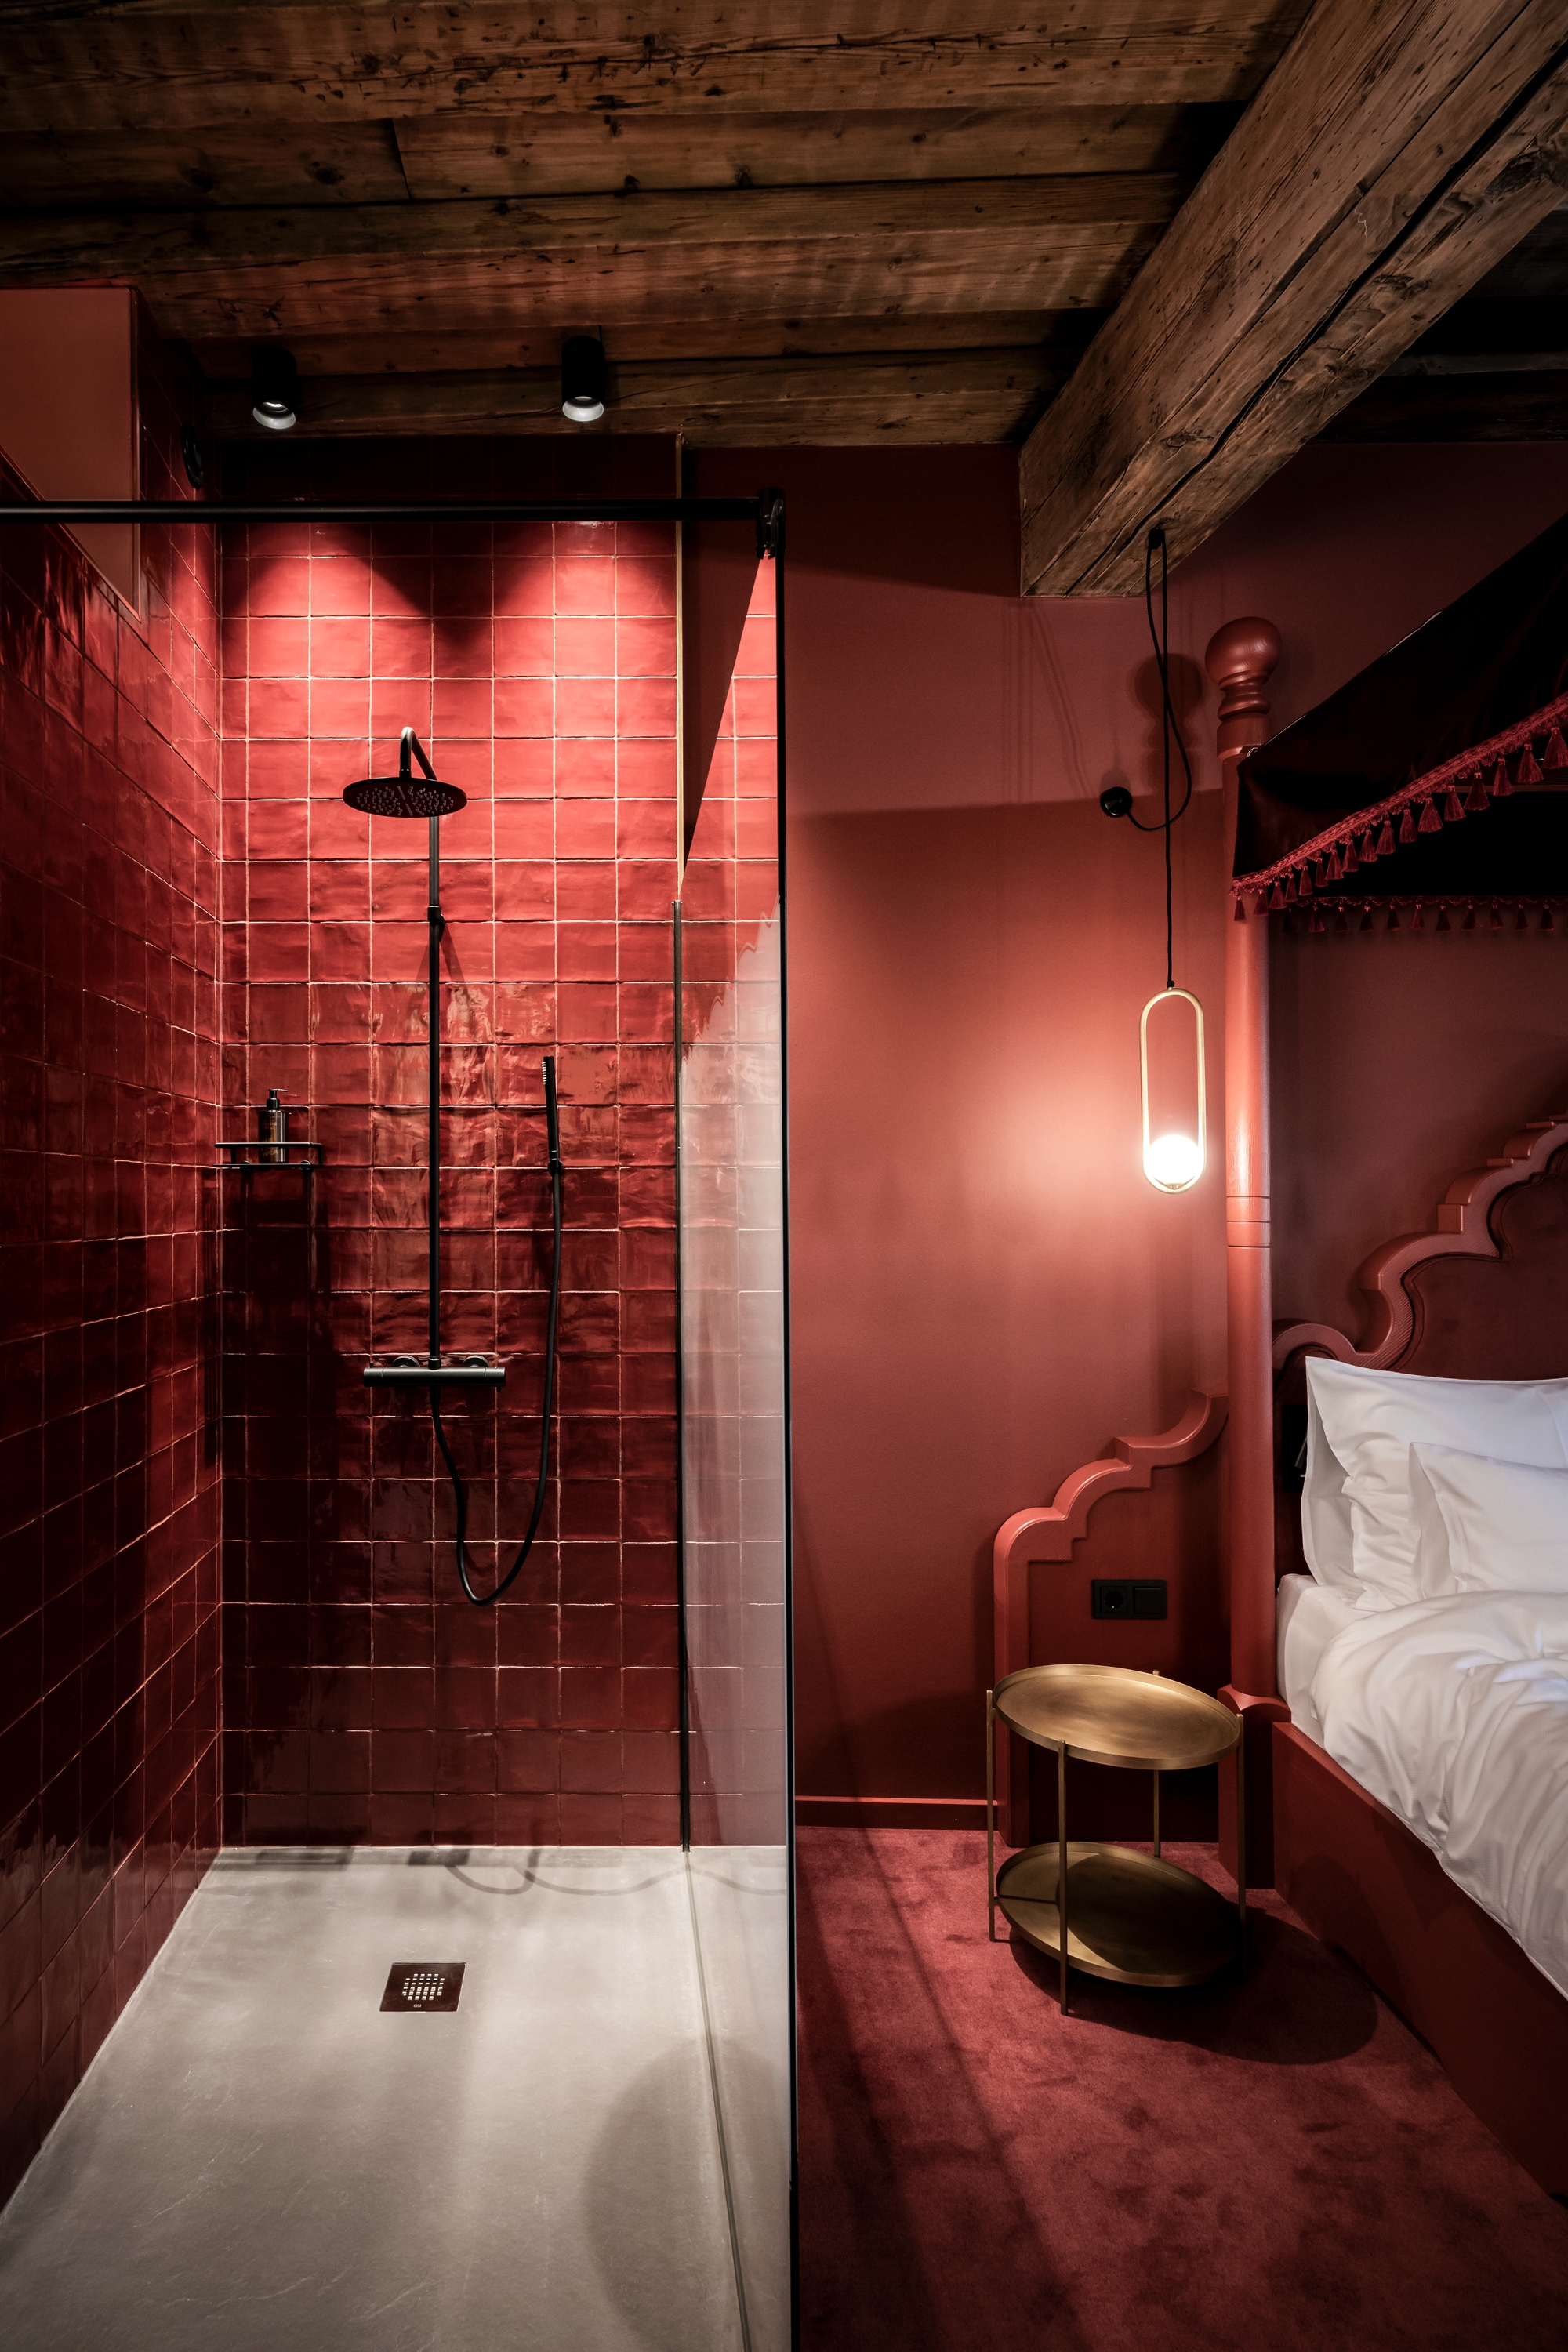 图片[9]|维赛斯克鲁兹酒店|ART-Arrakis | 建筑室内设计的创新与灵感